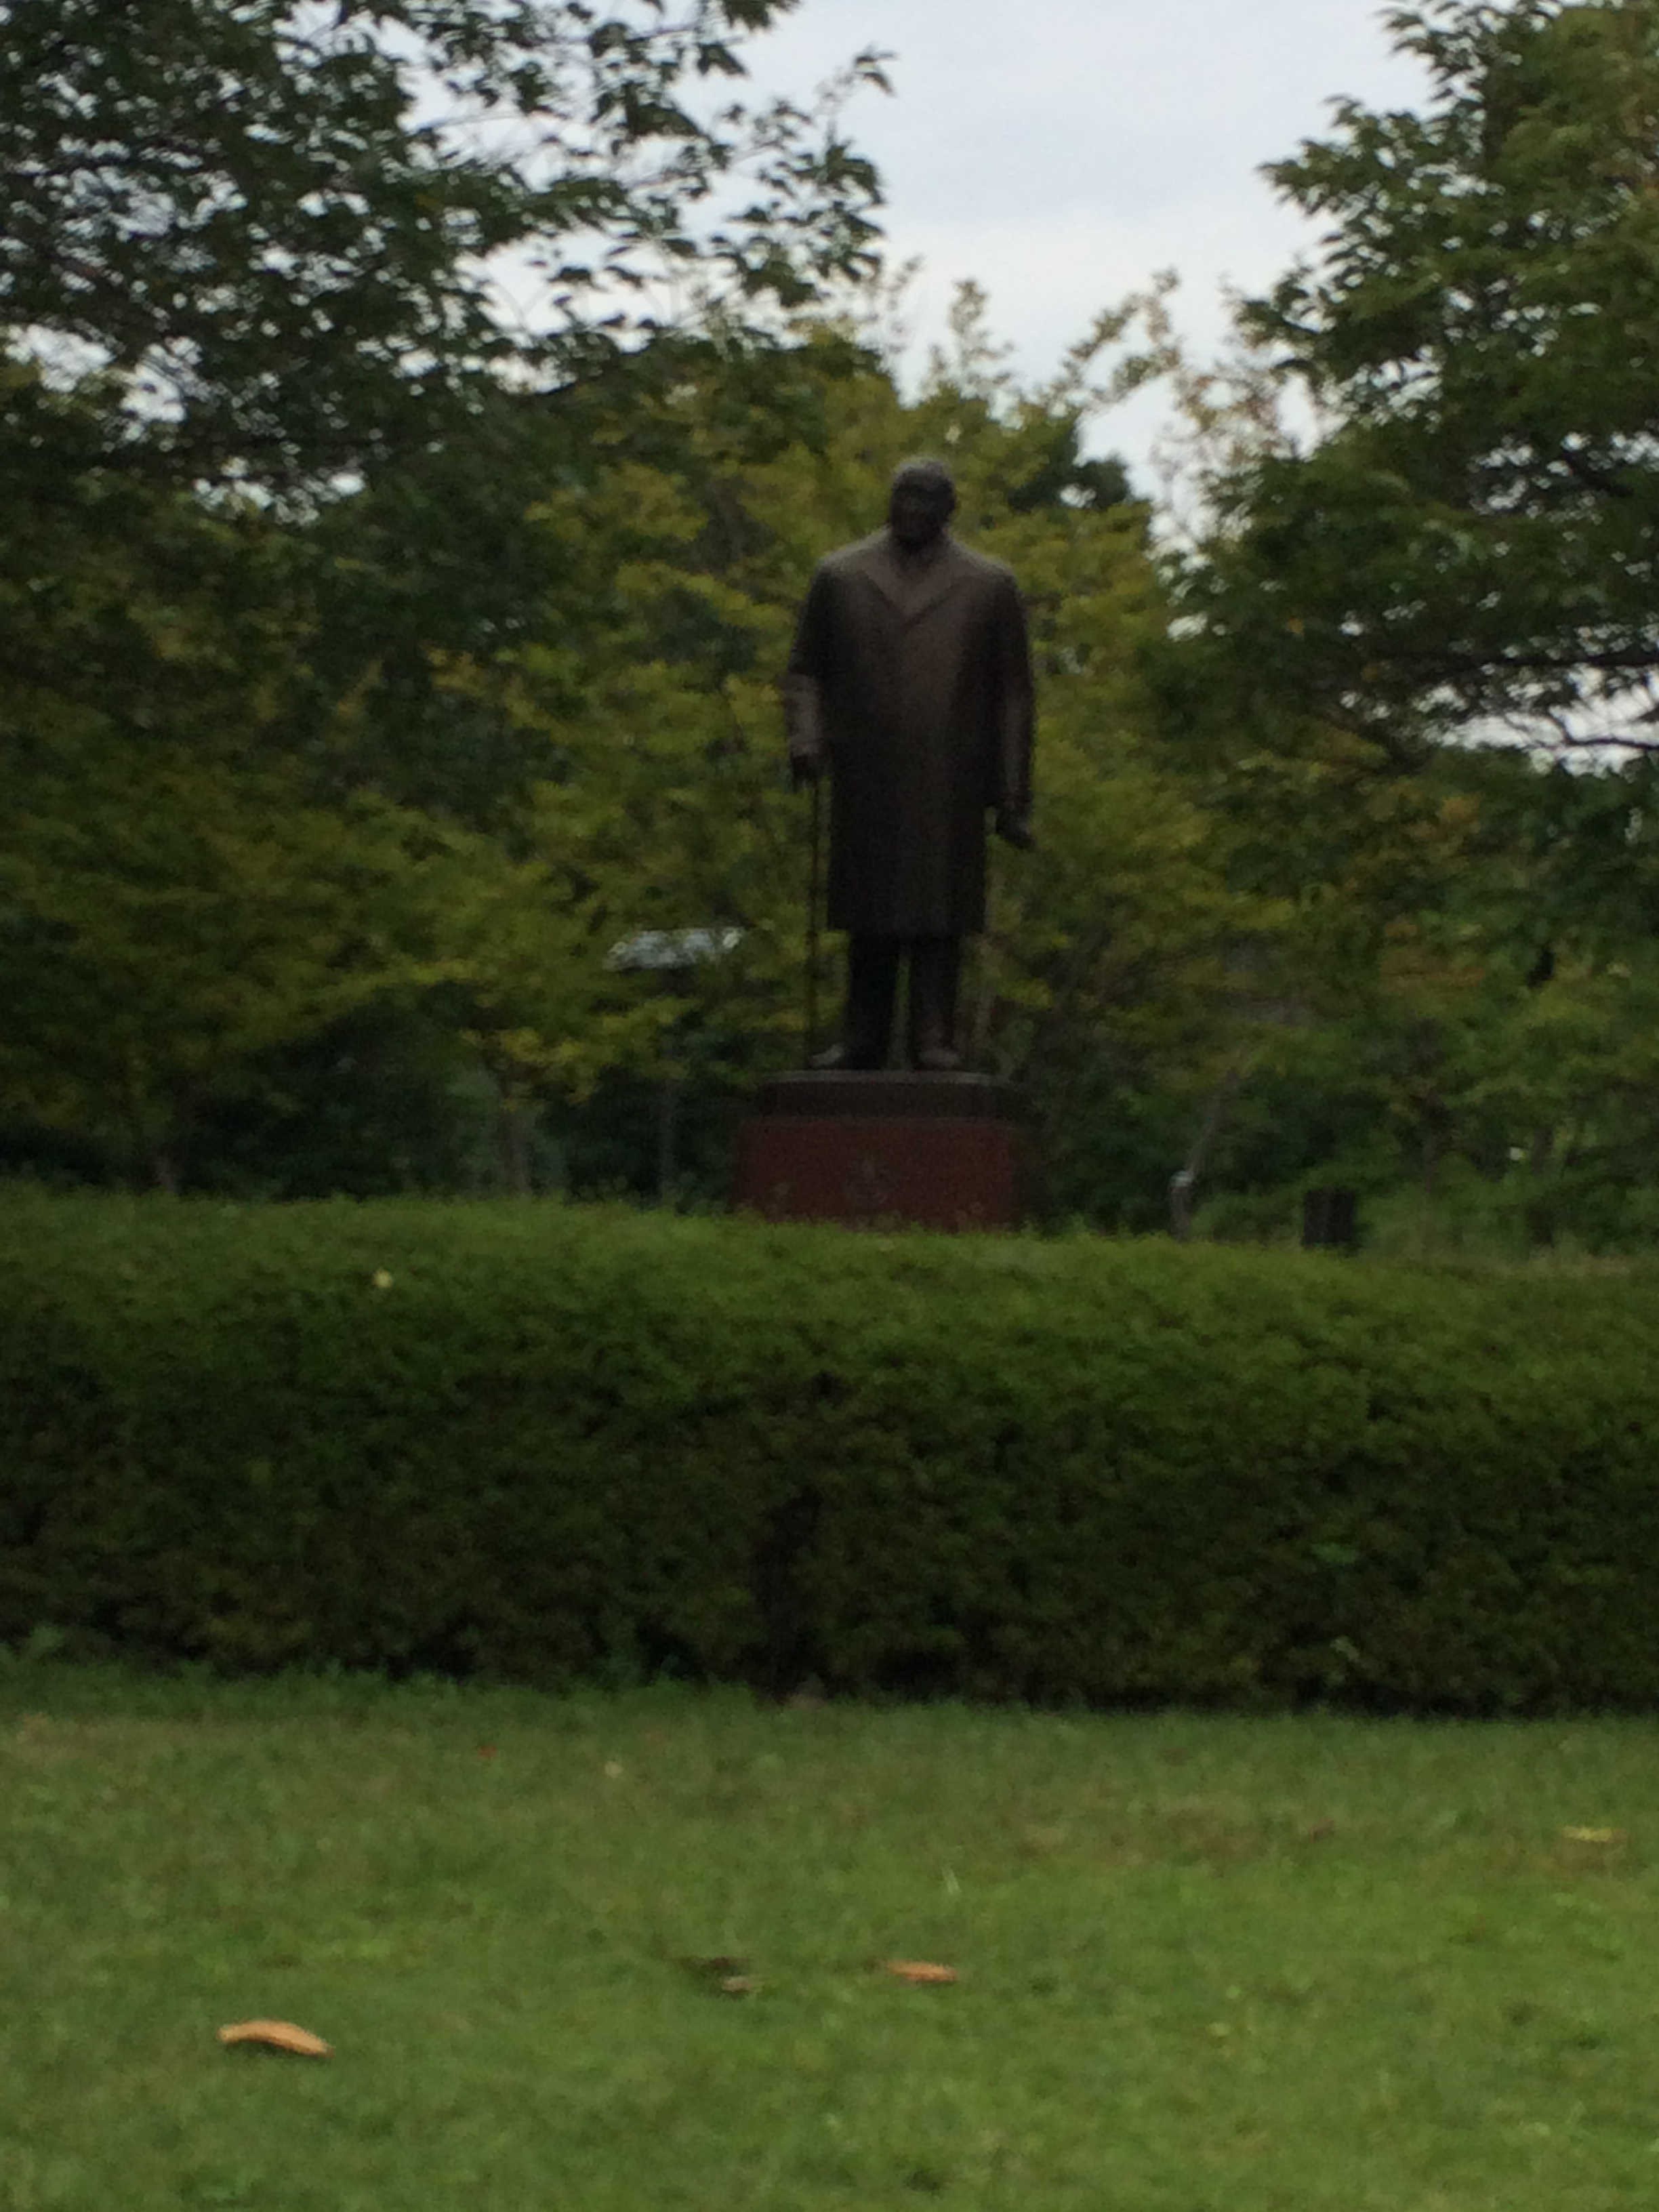 吉田茂銅像